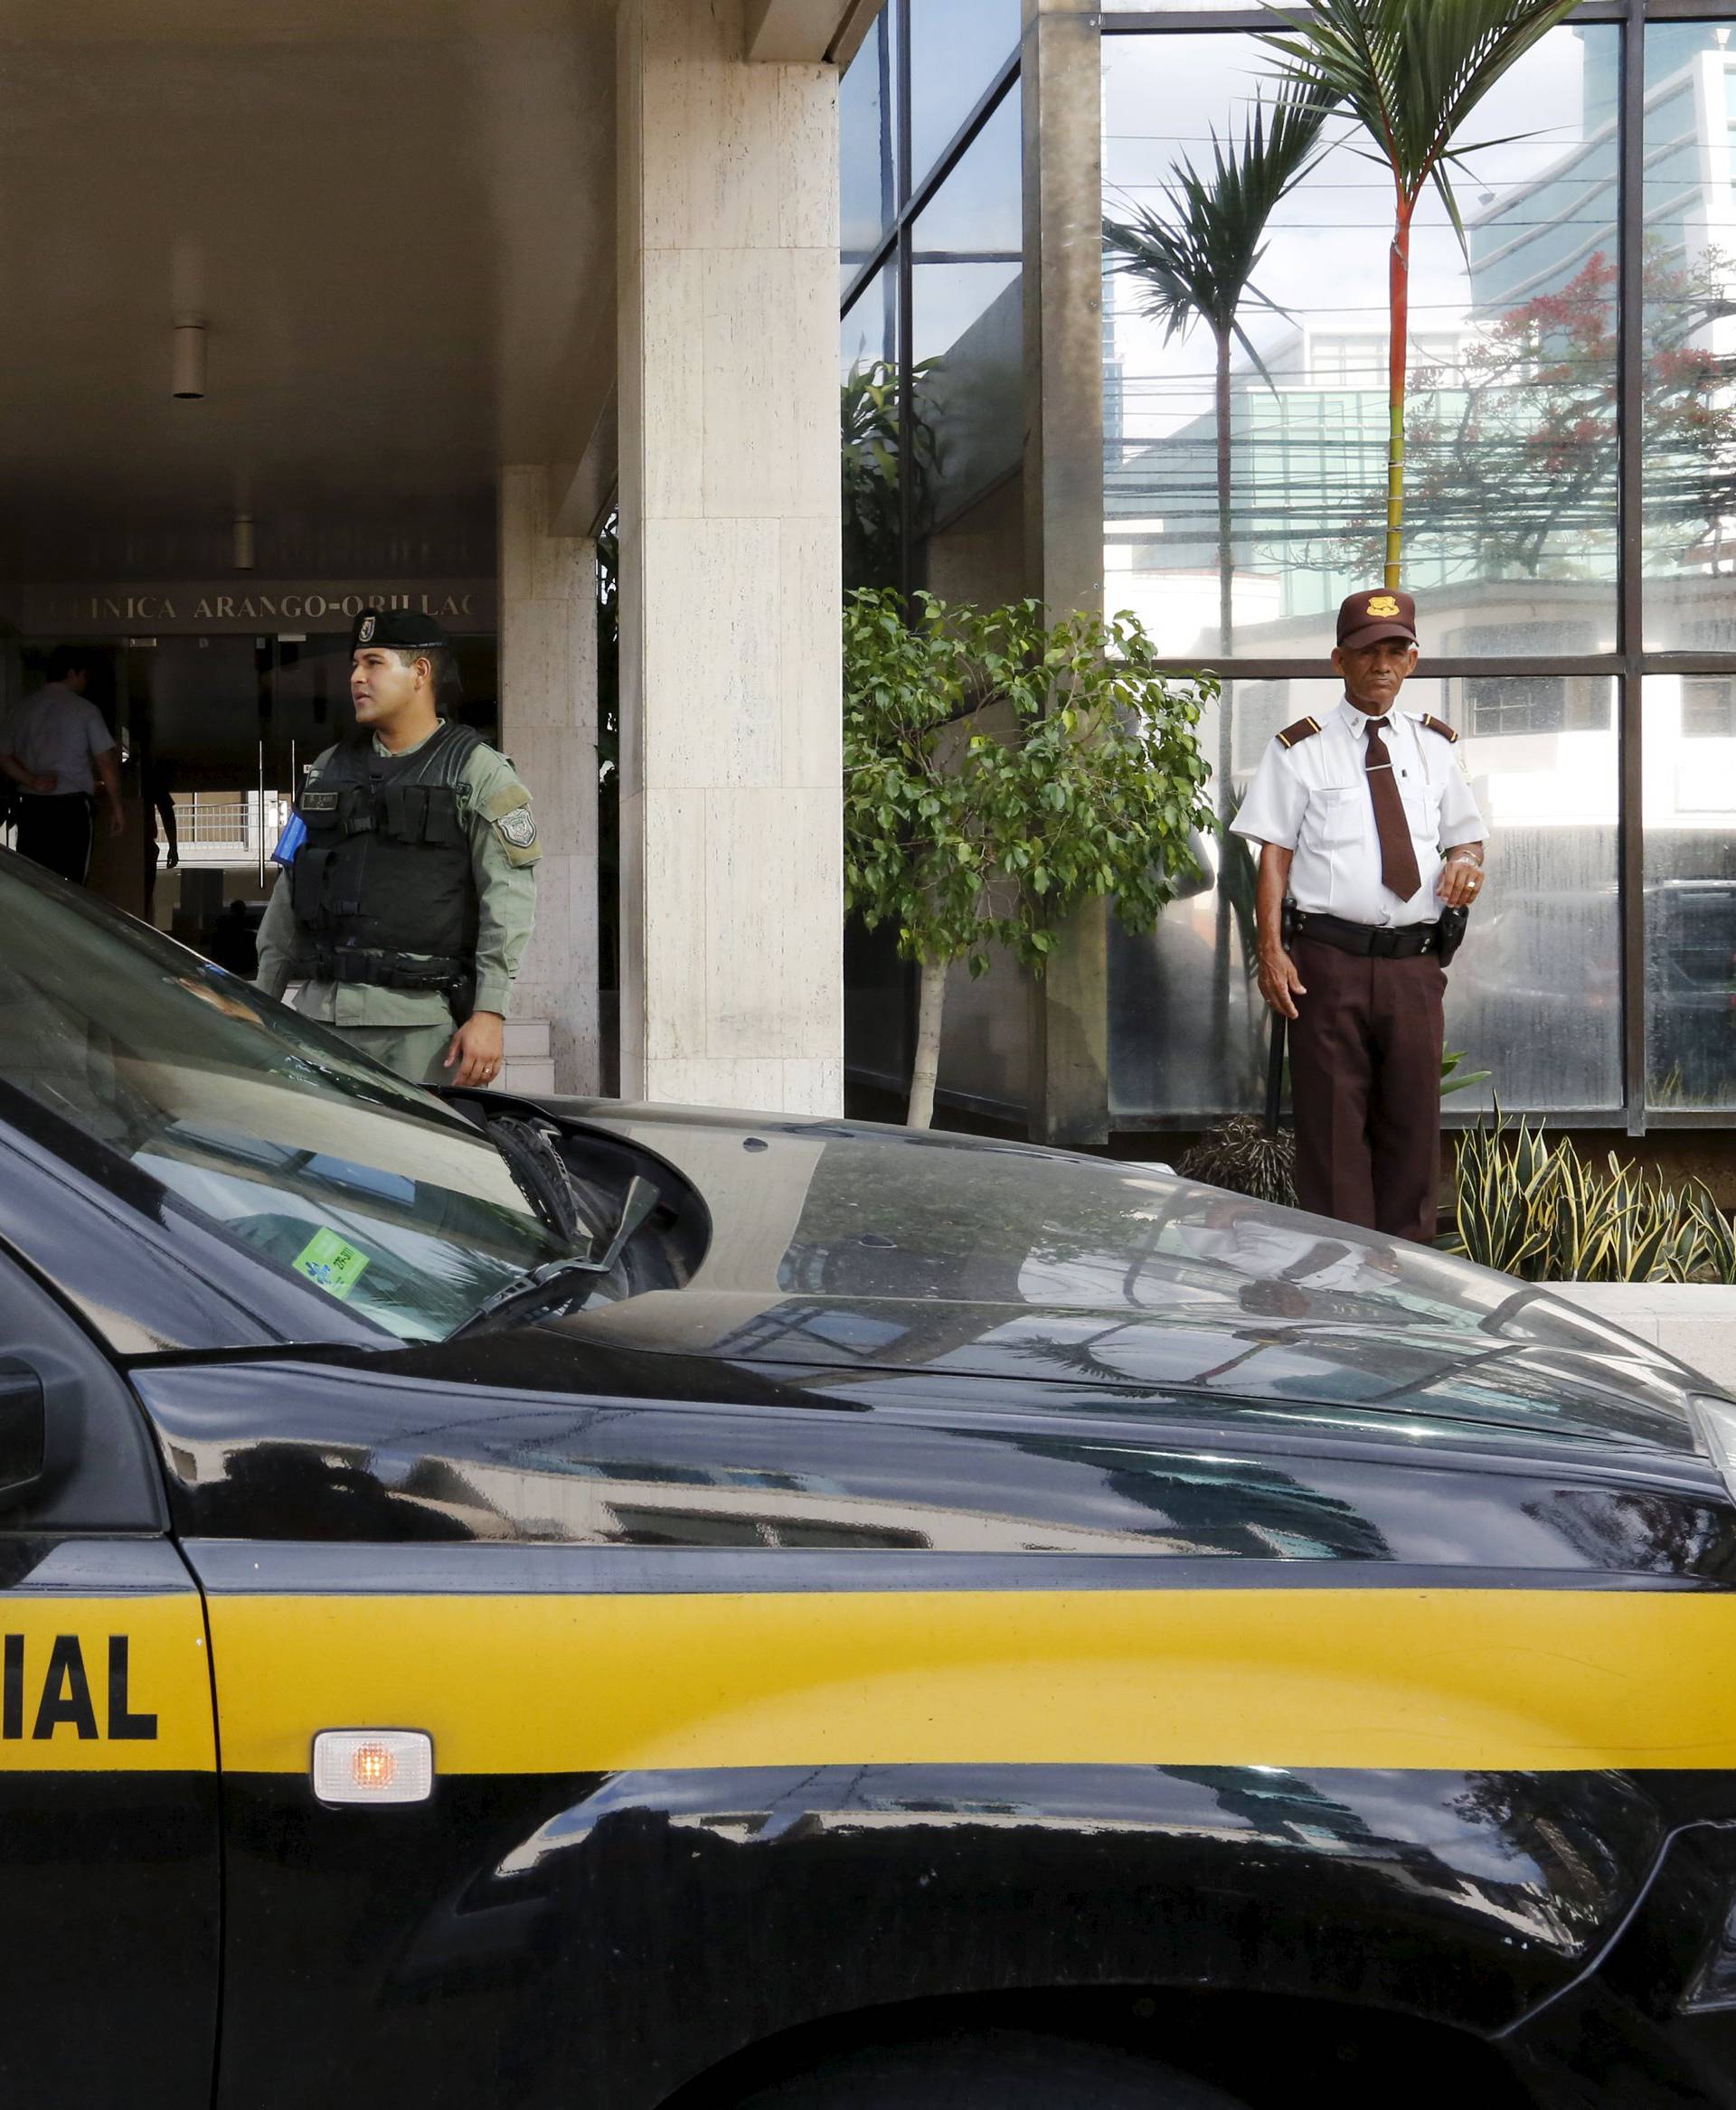 Panamska policija pretresla je urede tvrtke Mossack Fonseca